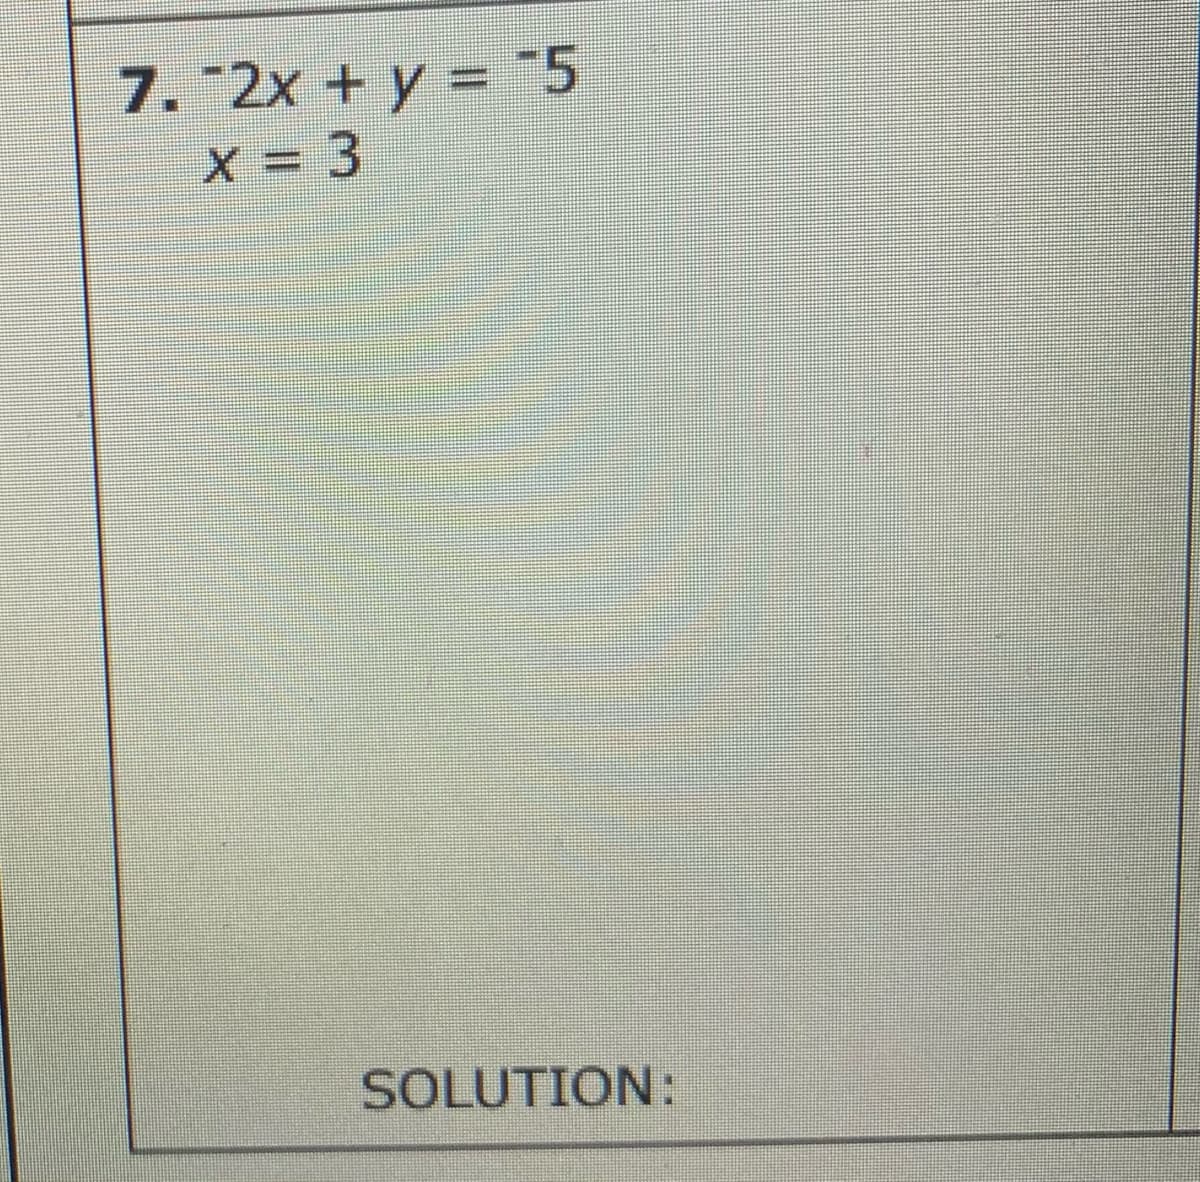 7. "2x + y = "5
X = 3
SOLUTION:
